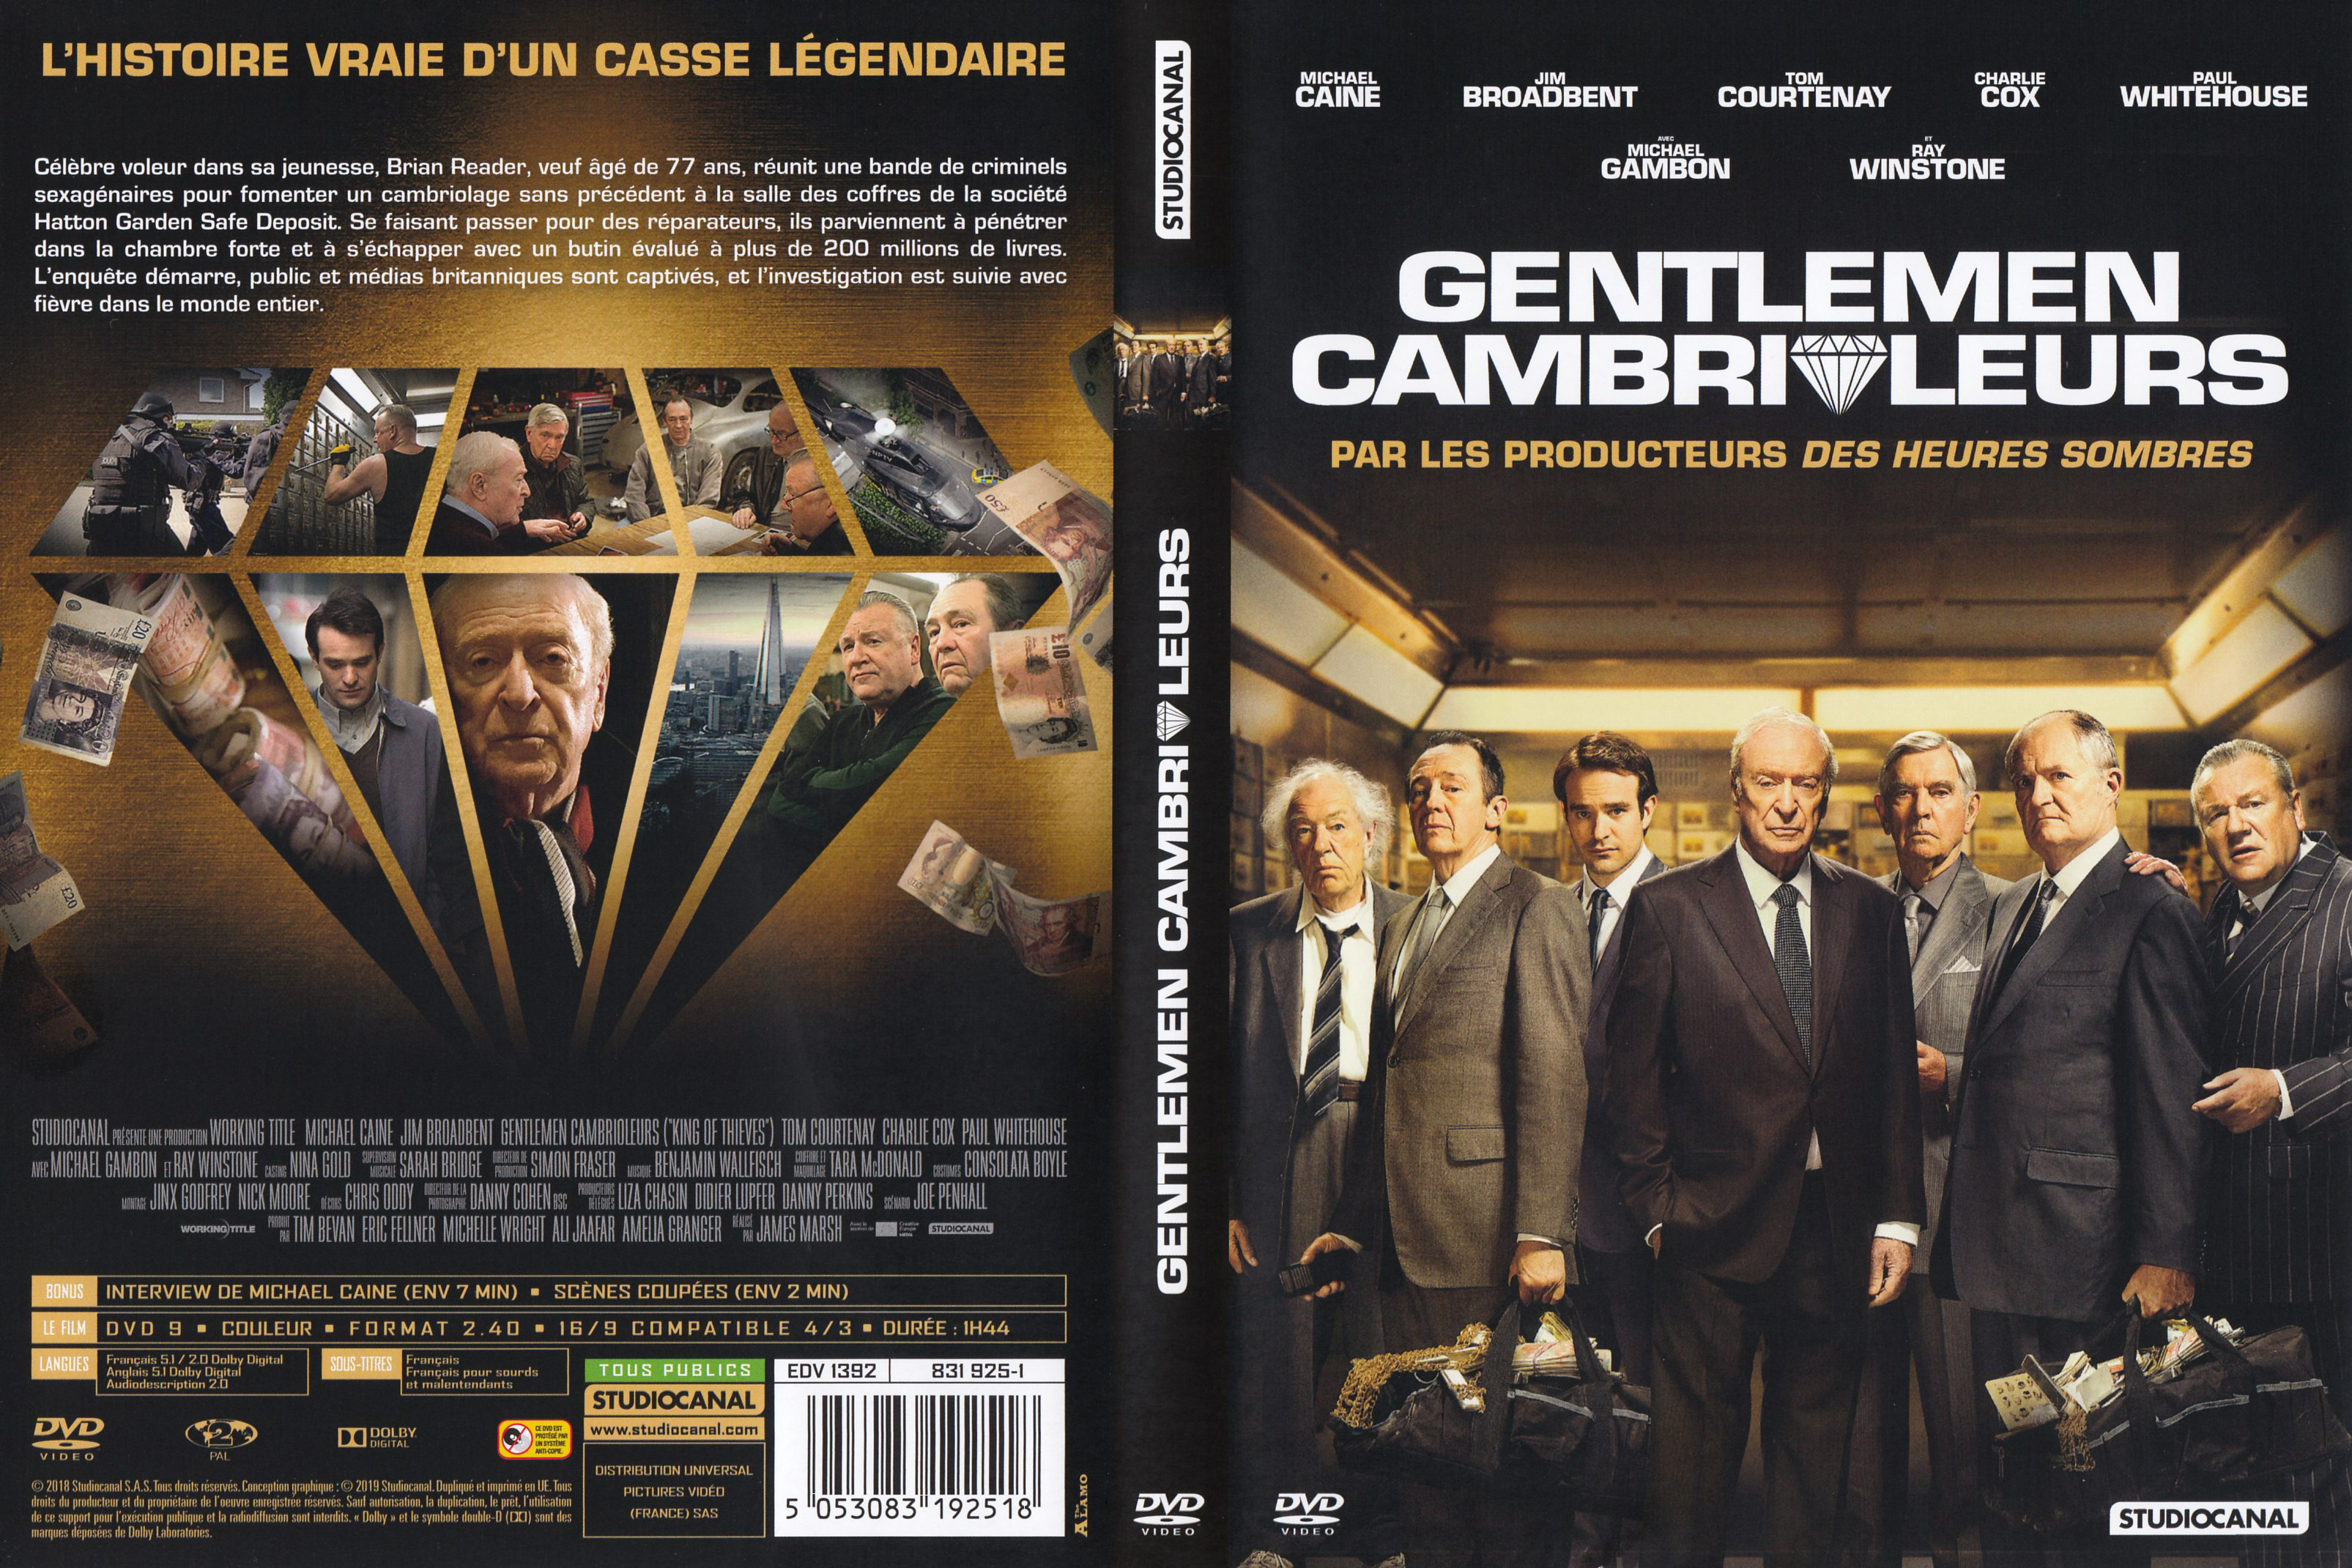 Jaquette DVD Gentlemen cambrioleurs